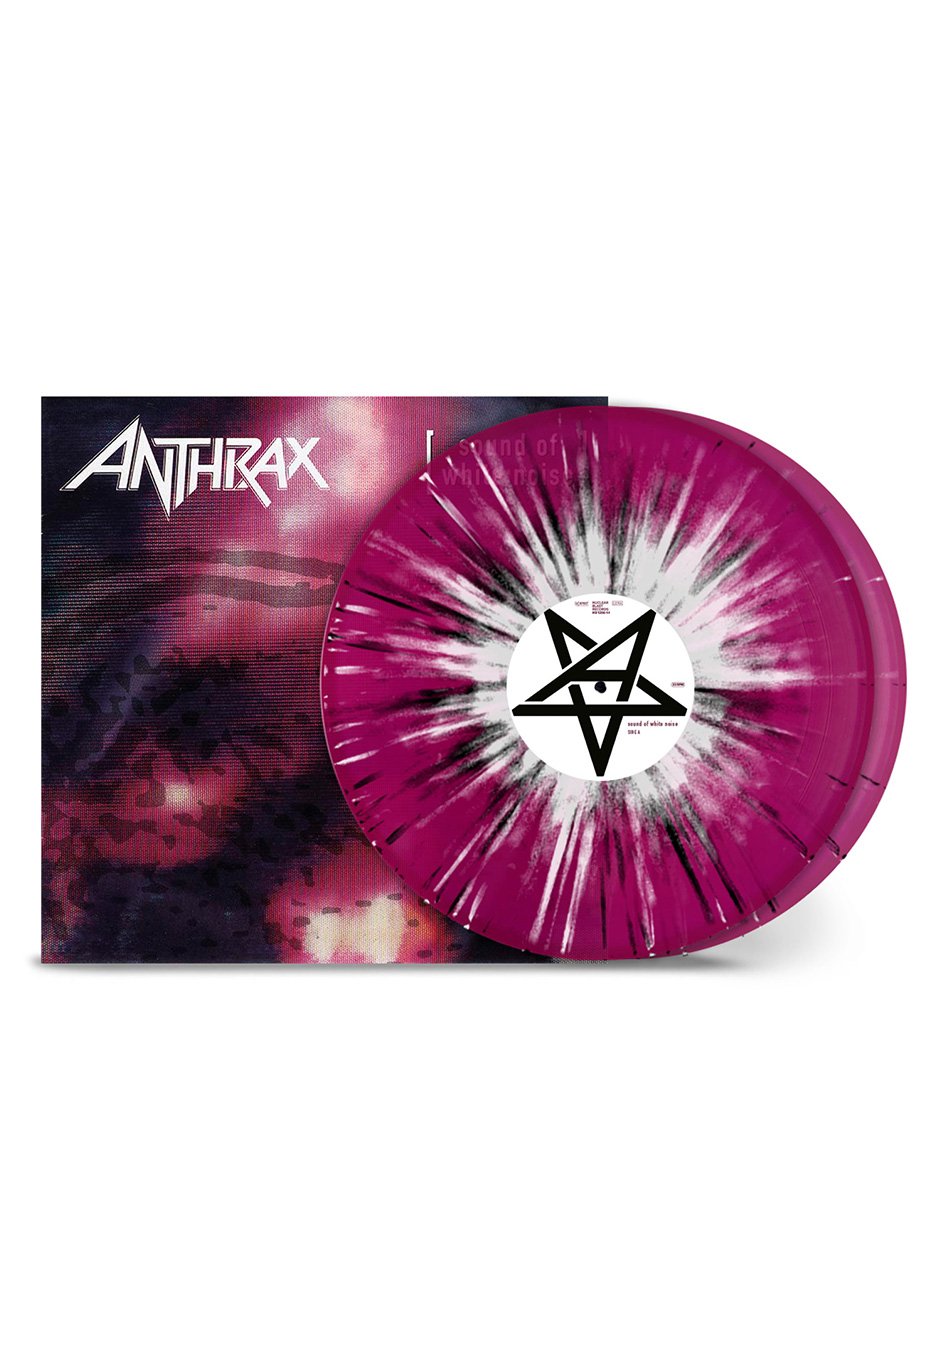 Anthrax - Sound Of White Noise Ltd. Transparent Violet/White/Black - Splatter 2 Vinyl